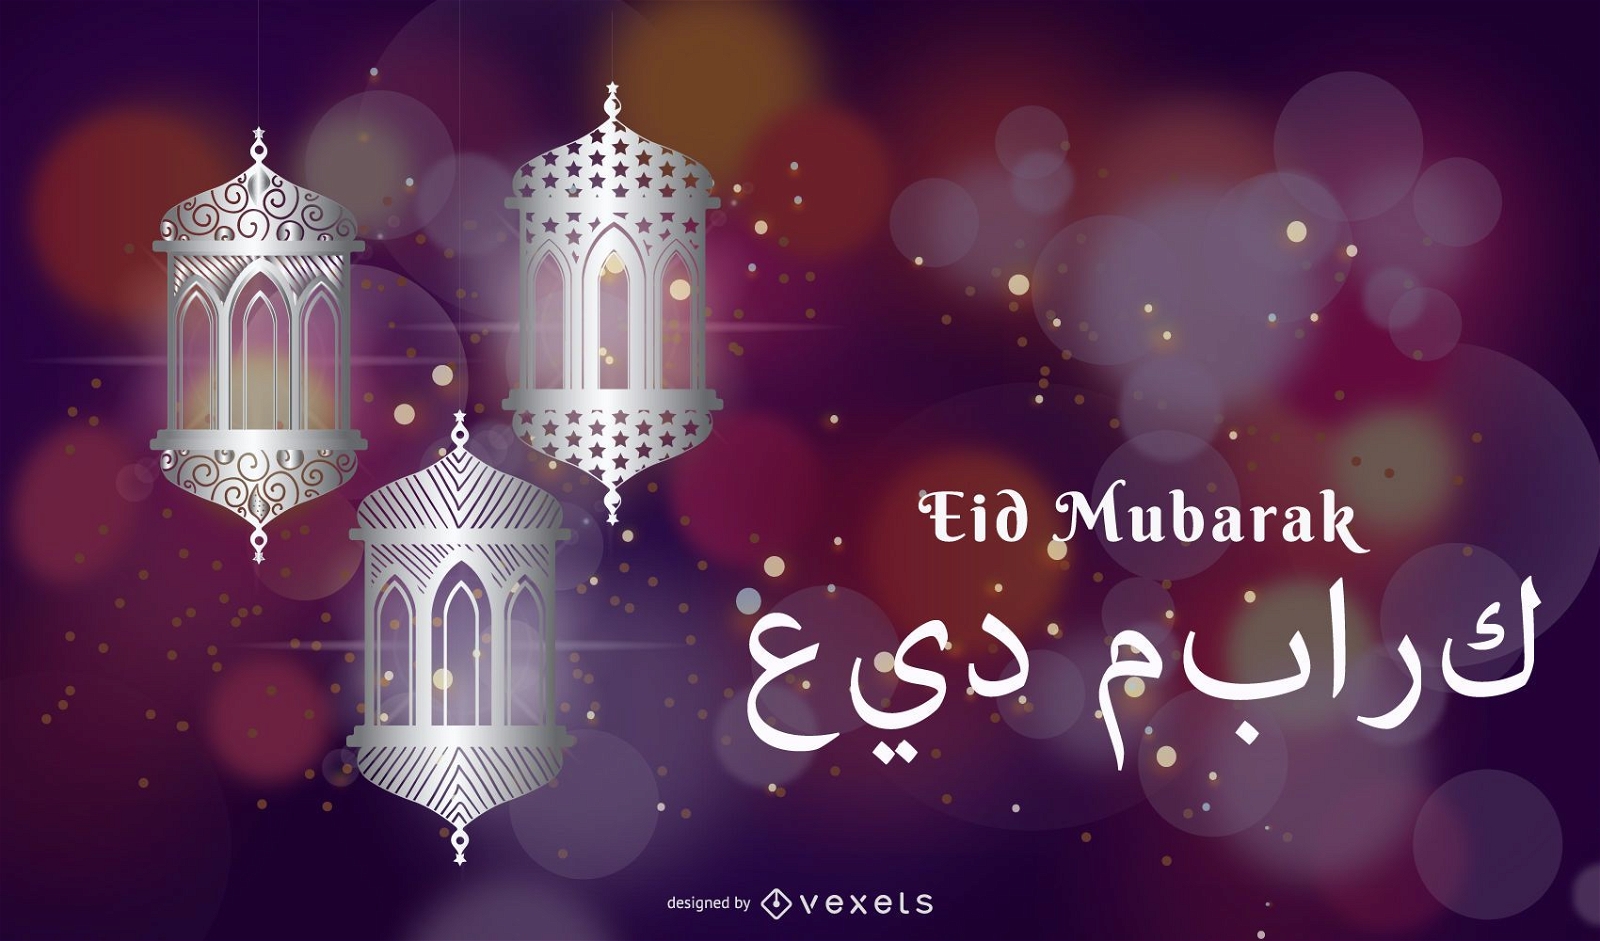 L?mpara de mezquita que brilla intensamente creativa con saludos de Eid